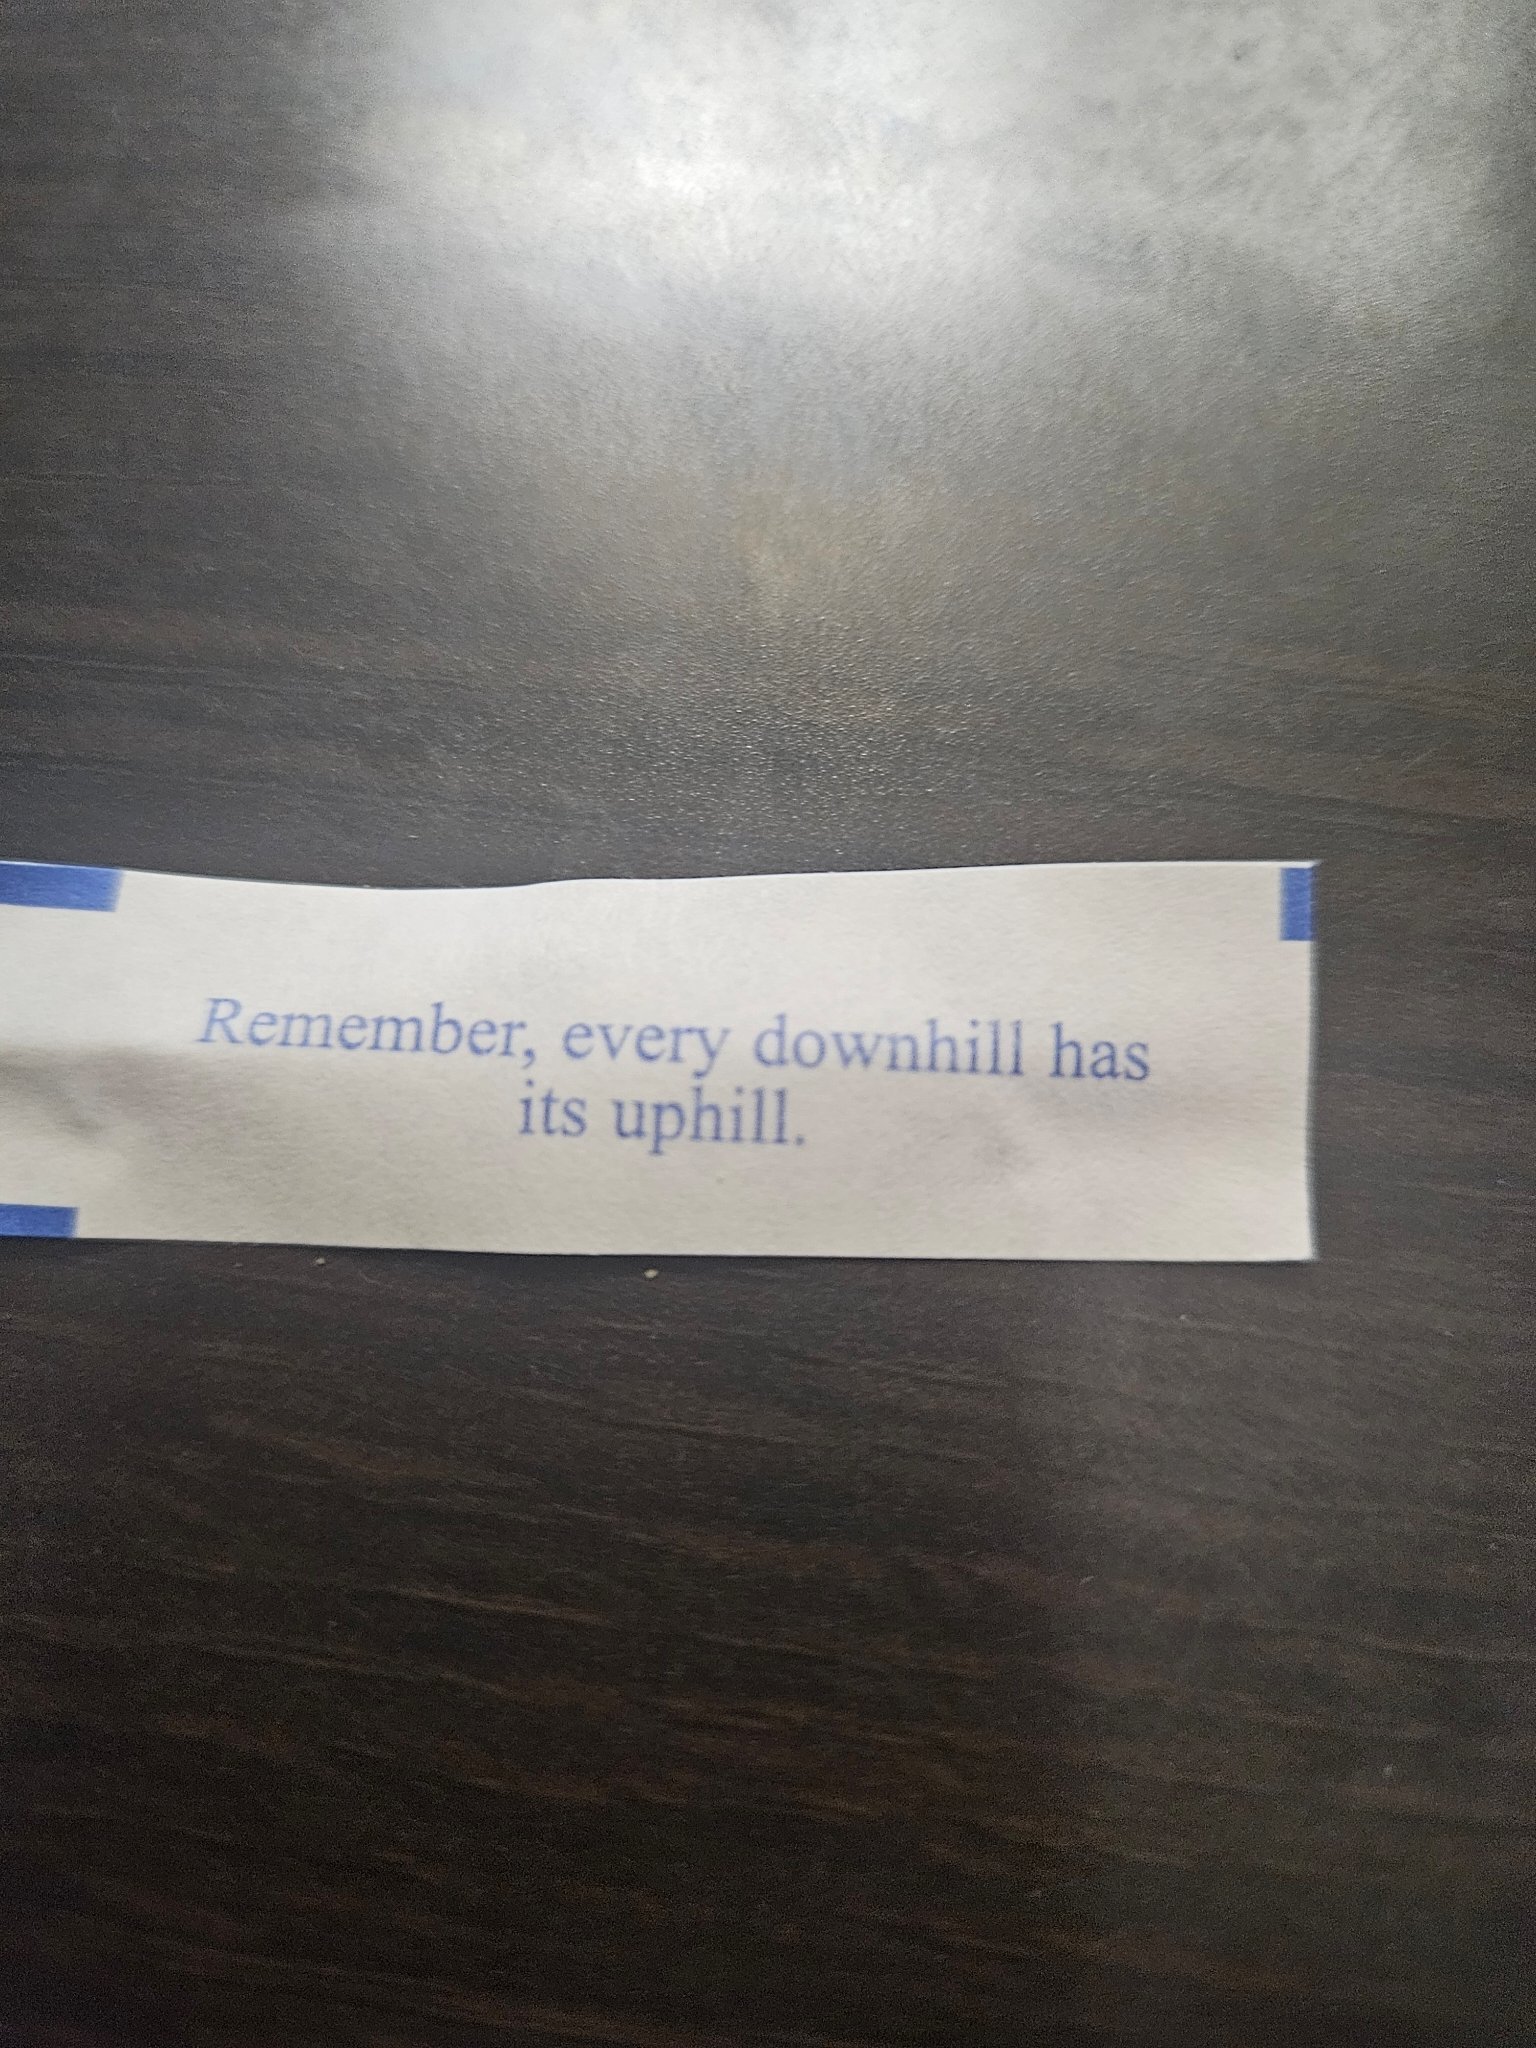 Cookie fortune has spoken.